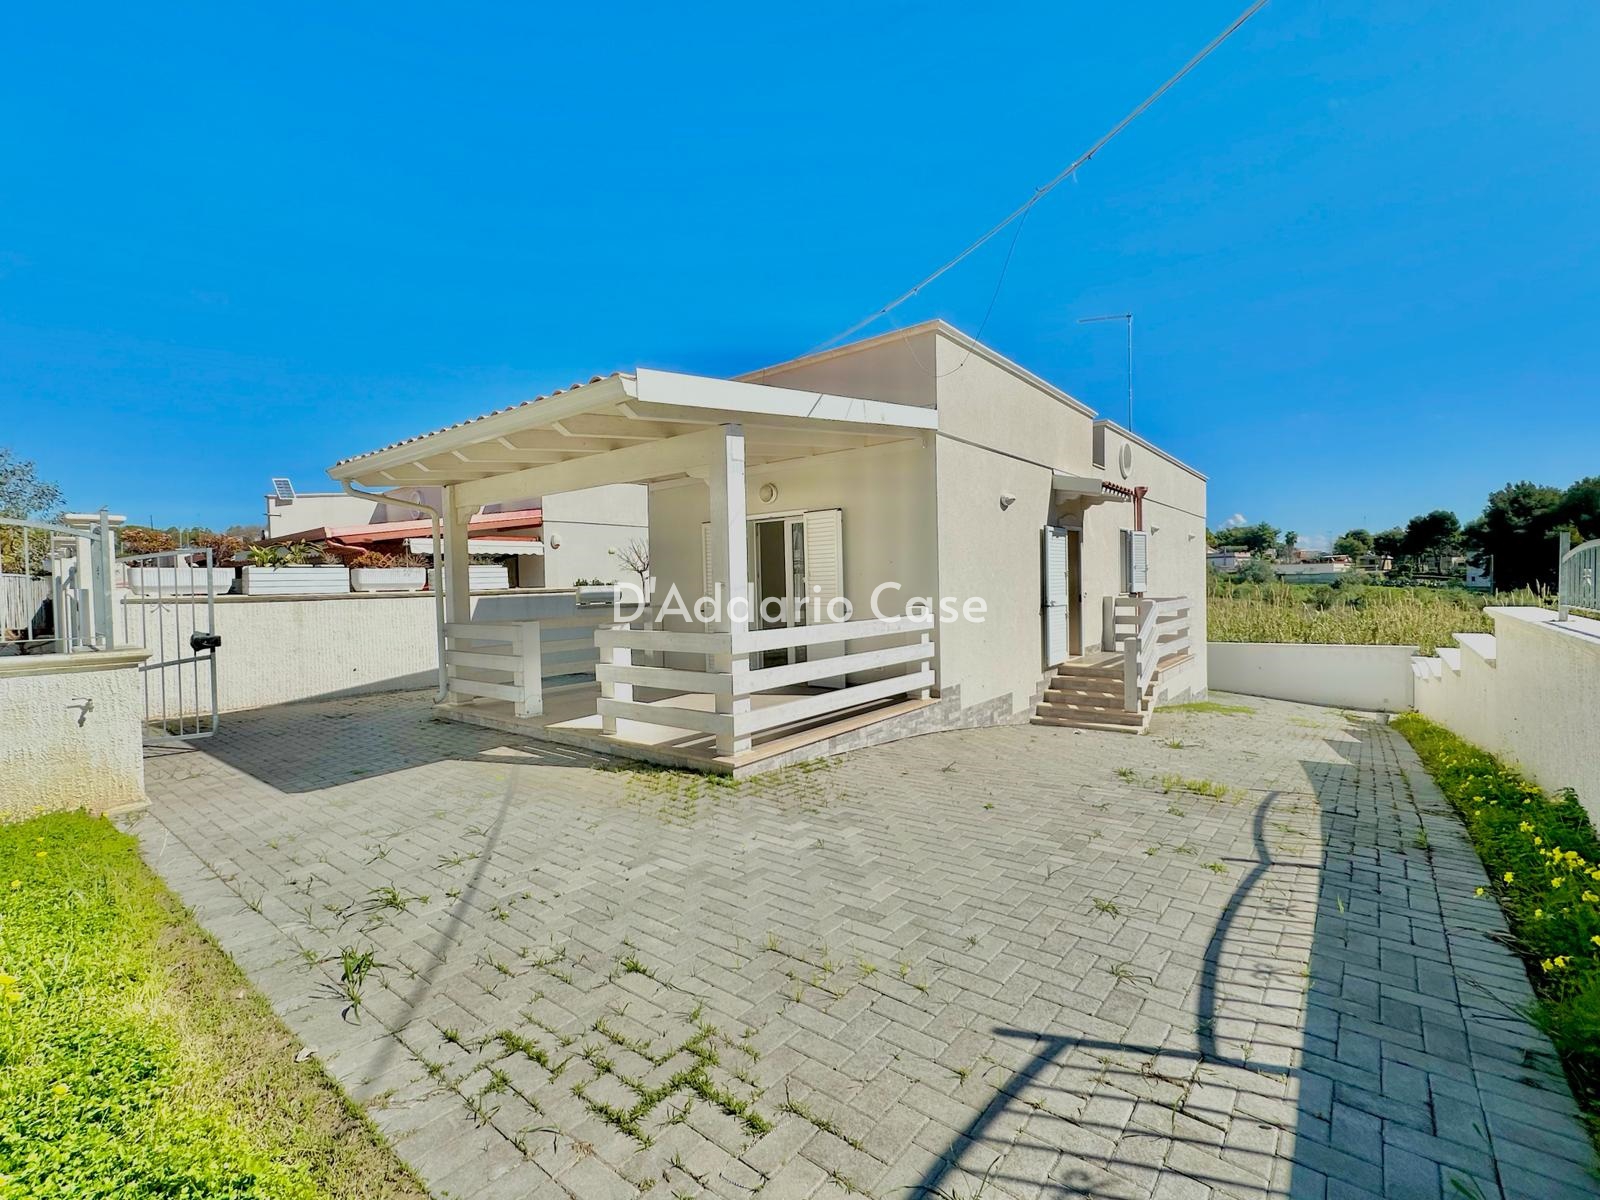 Villa in vendita a Taranto, 4 locali, prezzo € 158.000 | PortaleAgenzieImmobiliari.it